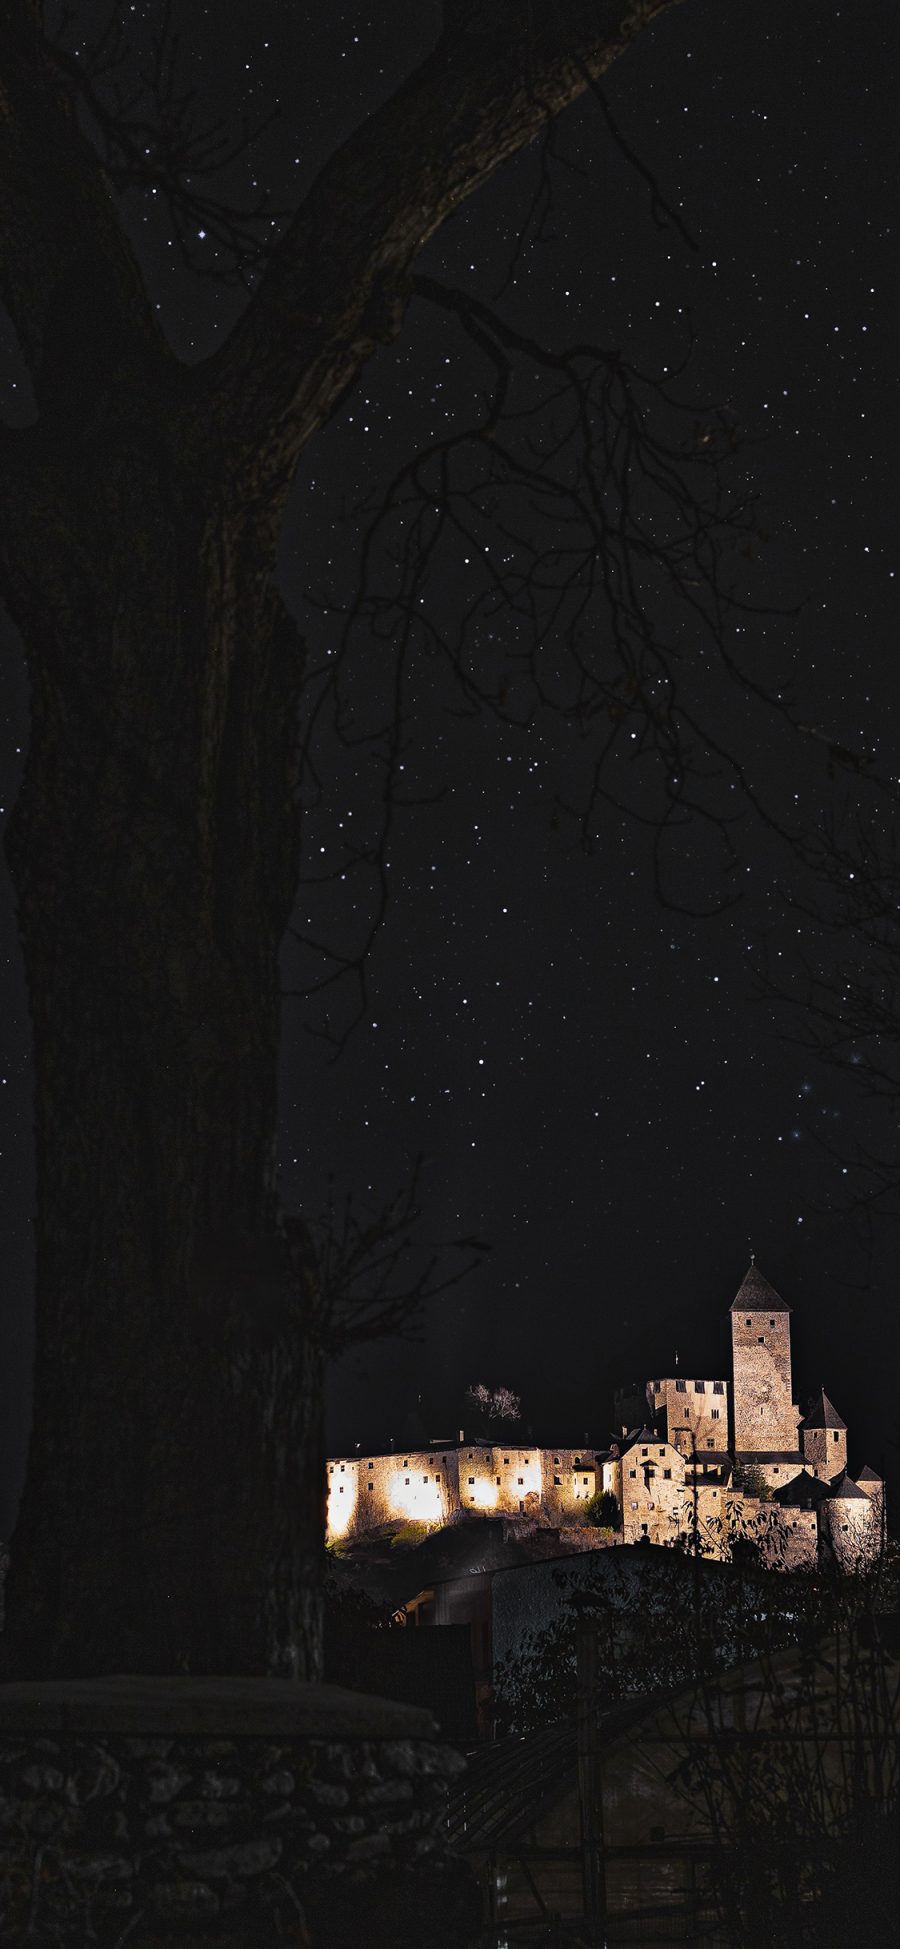 [2436×1125]夜景 星空 树木 建筑 苹果手机壁纸图片